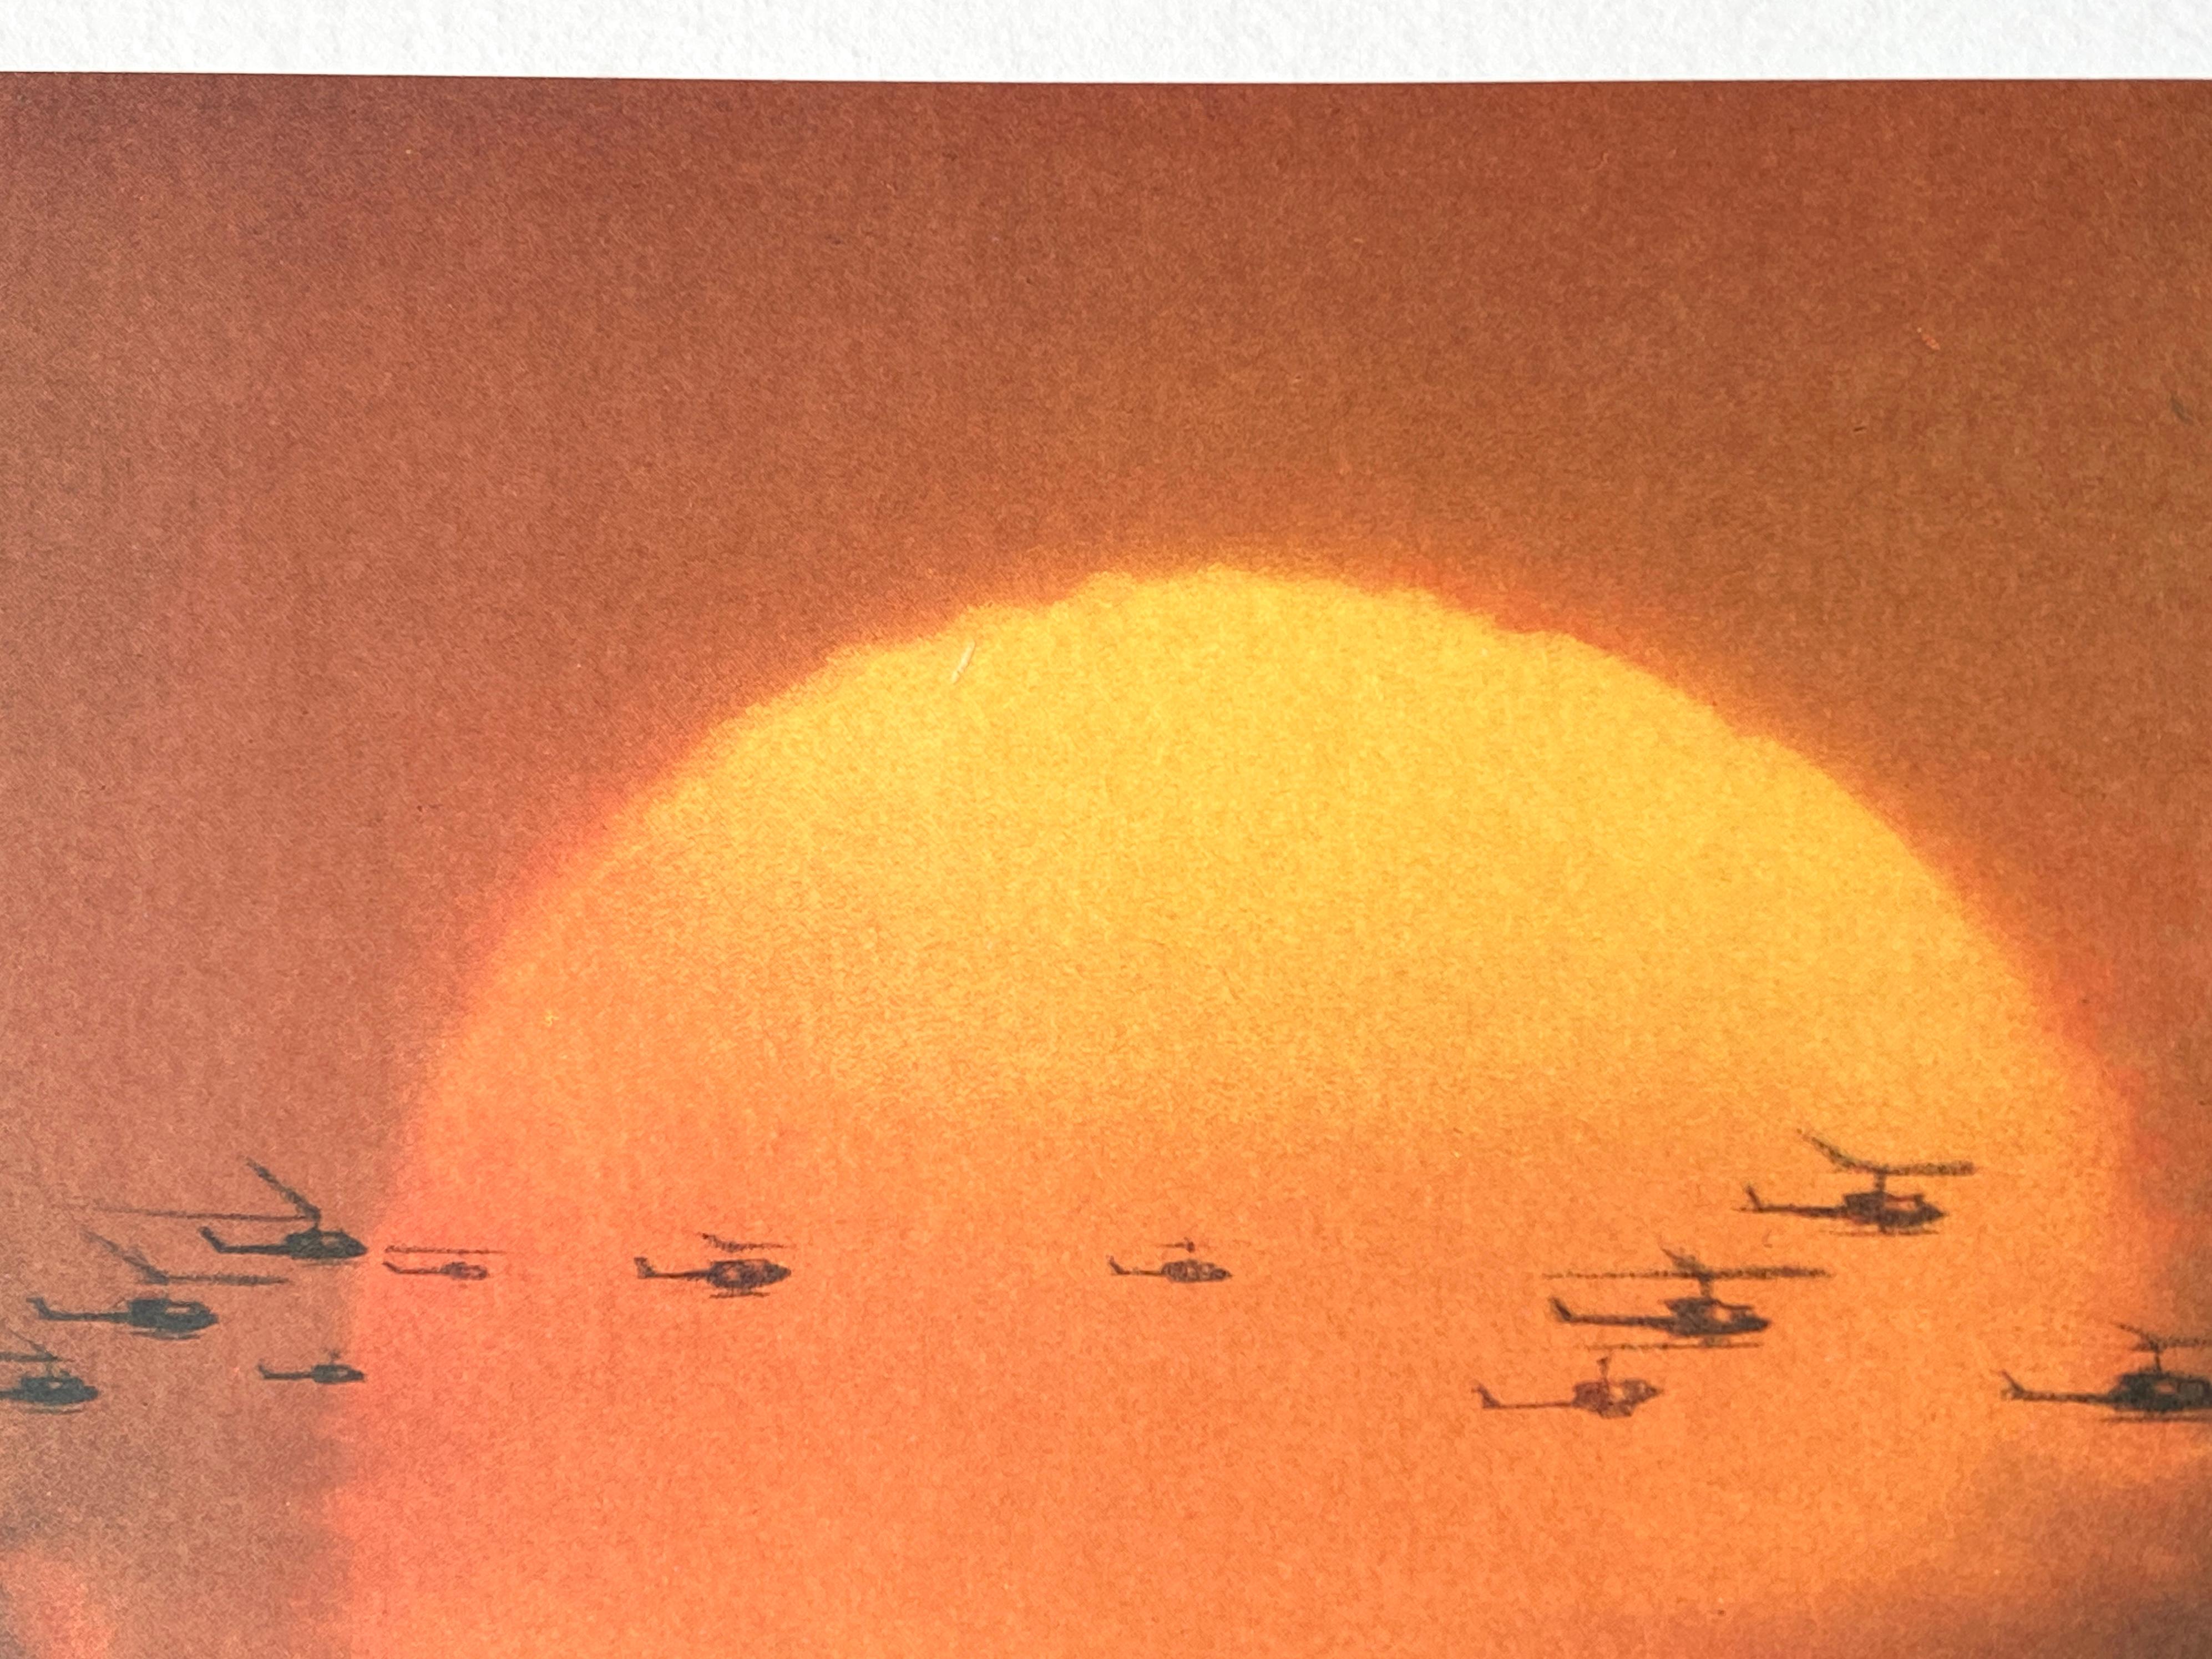 Late 20th Century 'Apocalypse Now' Original Vintage Japanese B2 Movie Poster, 1980